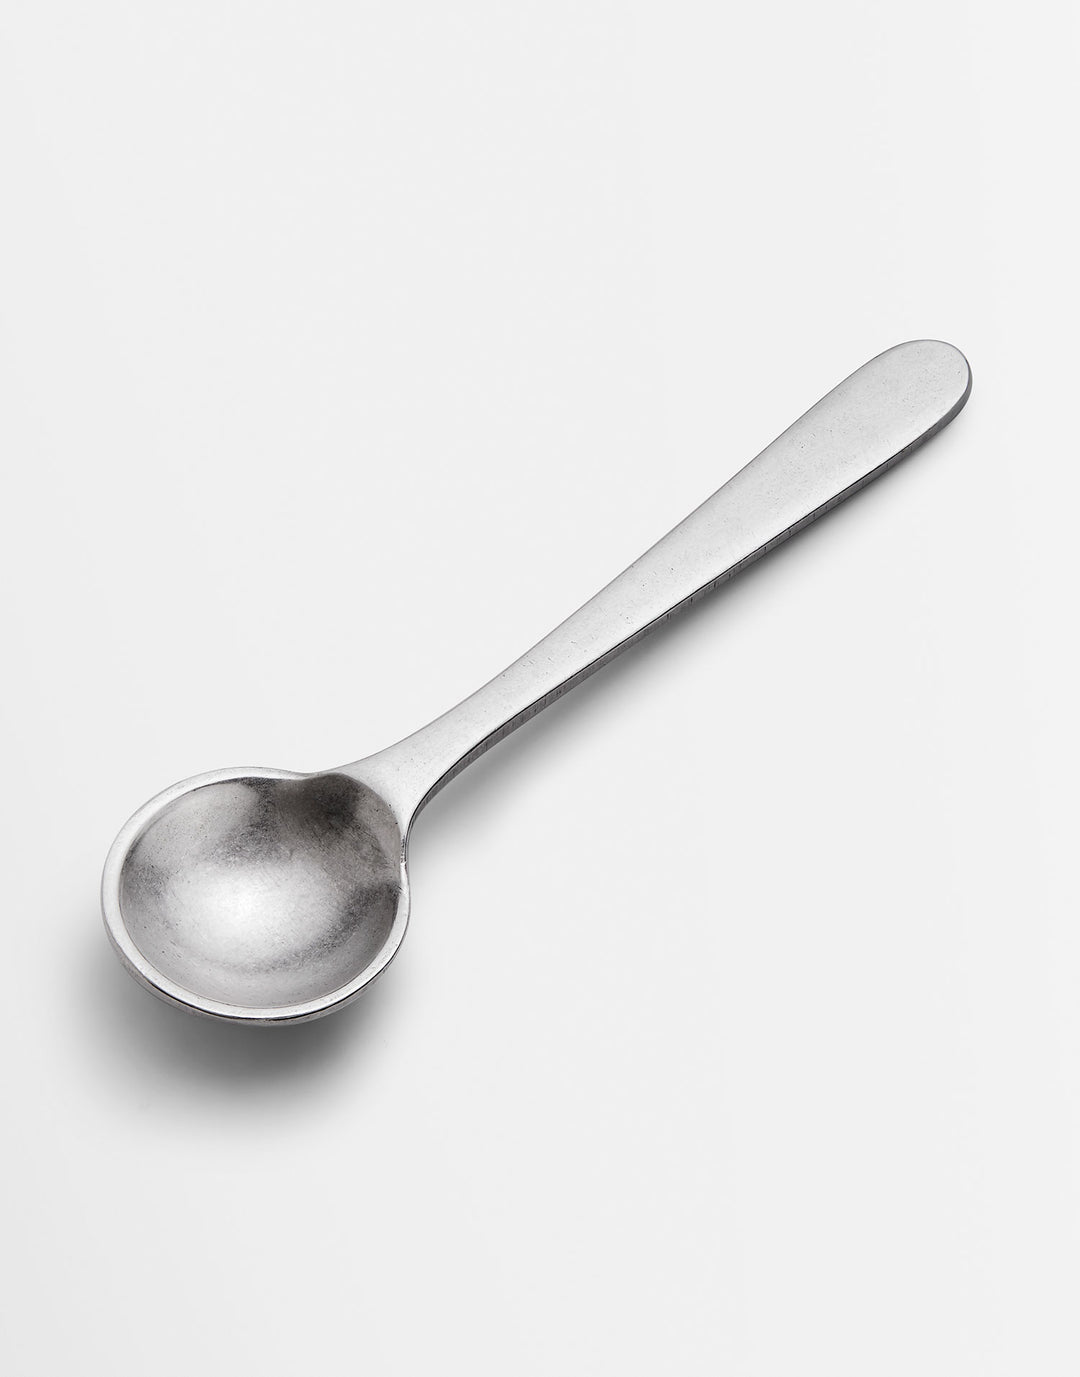 Handmade Pewter Salt Spoon